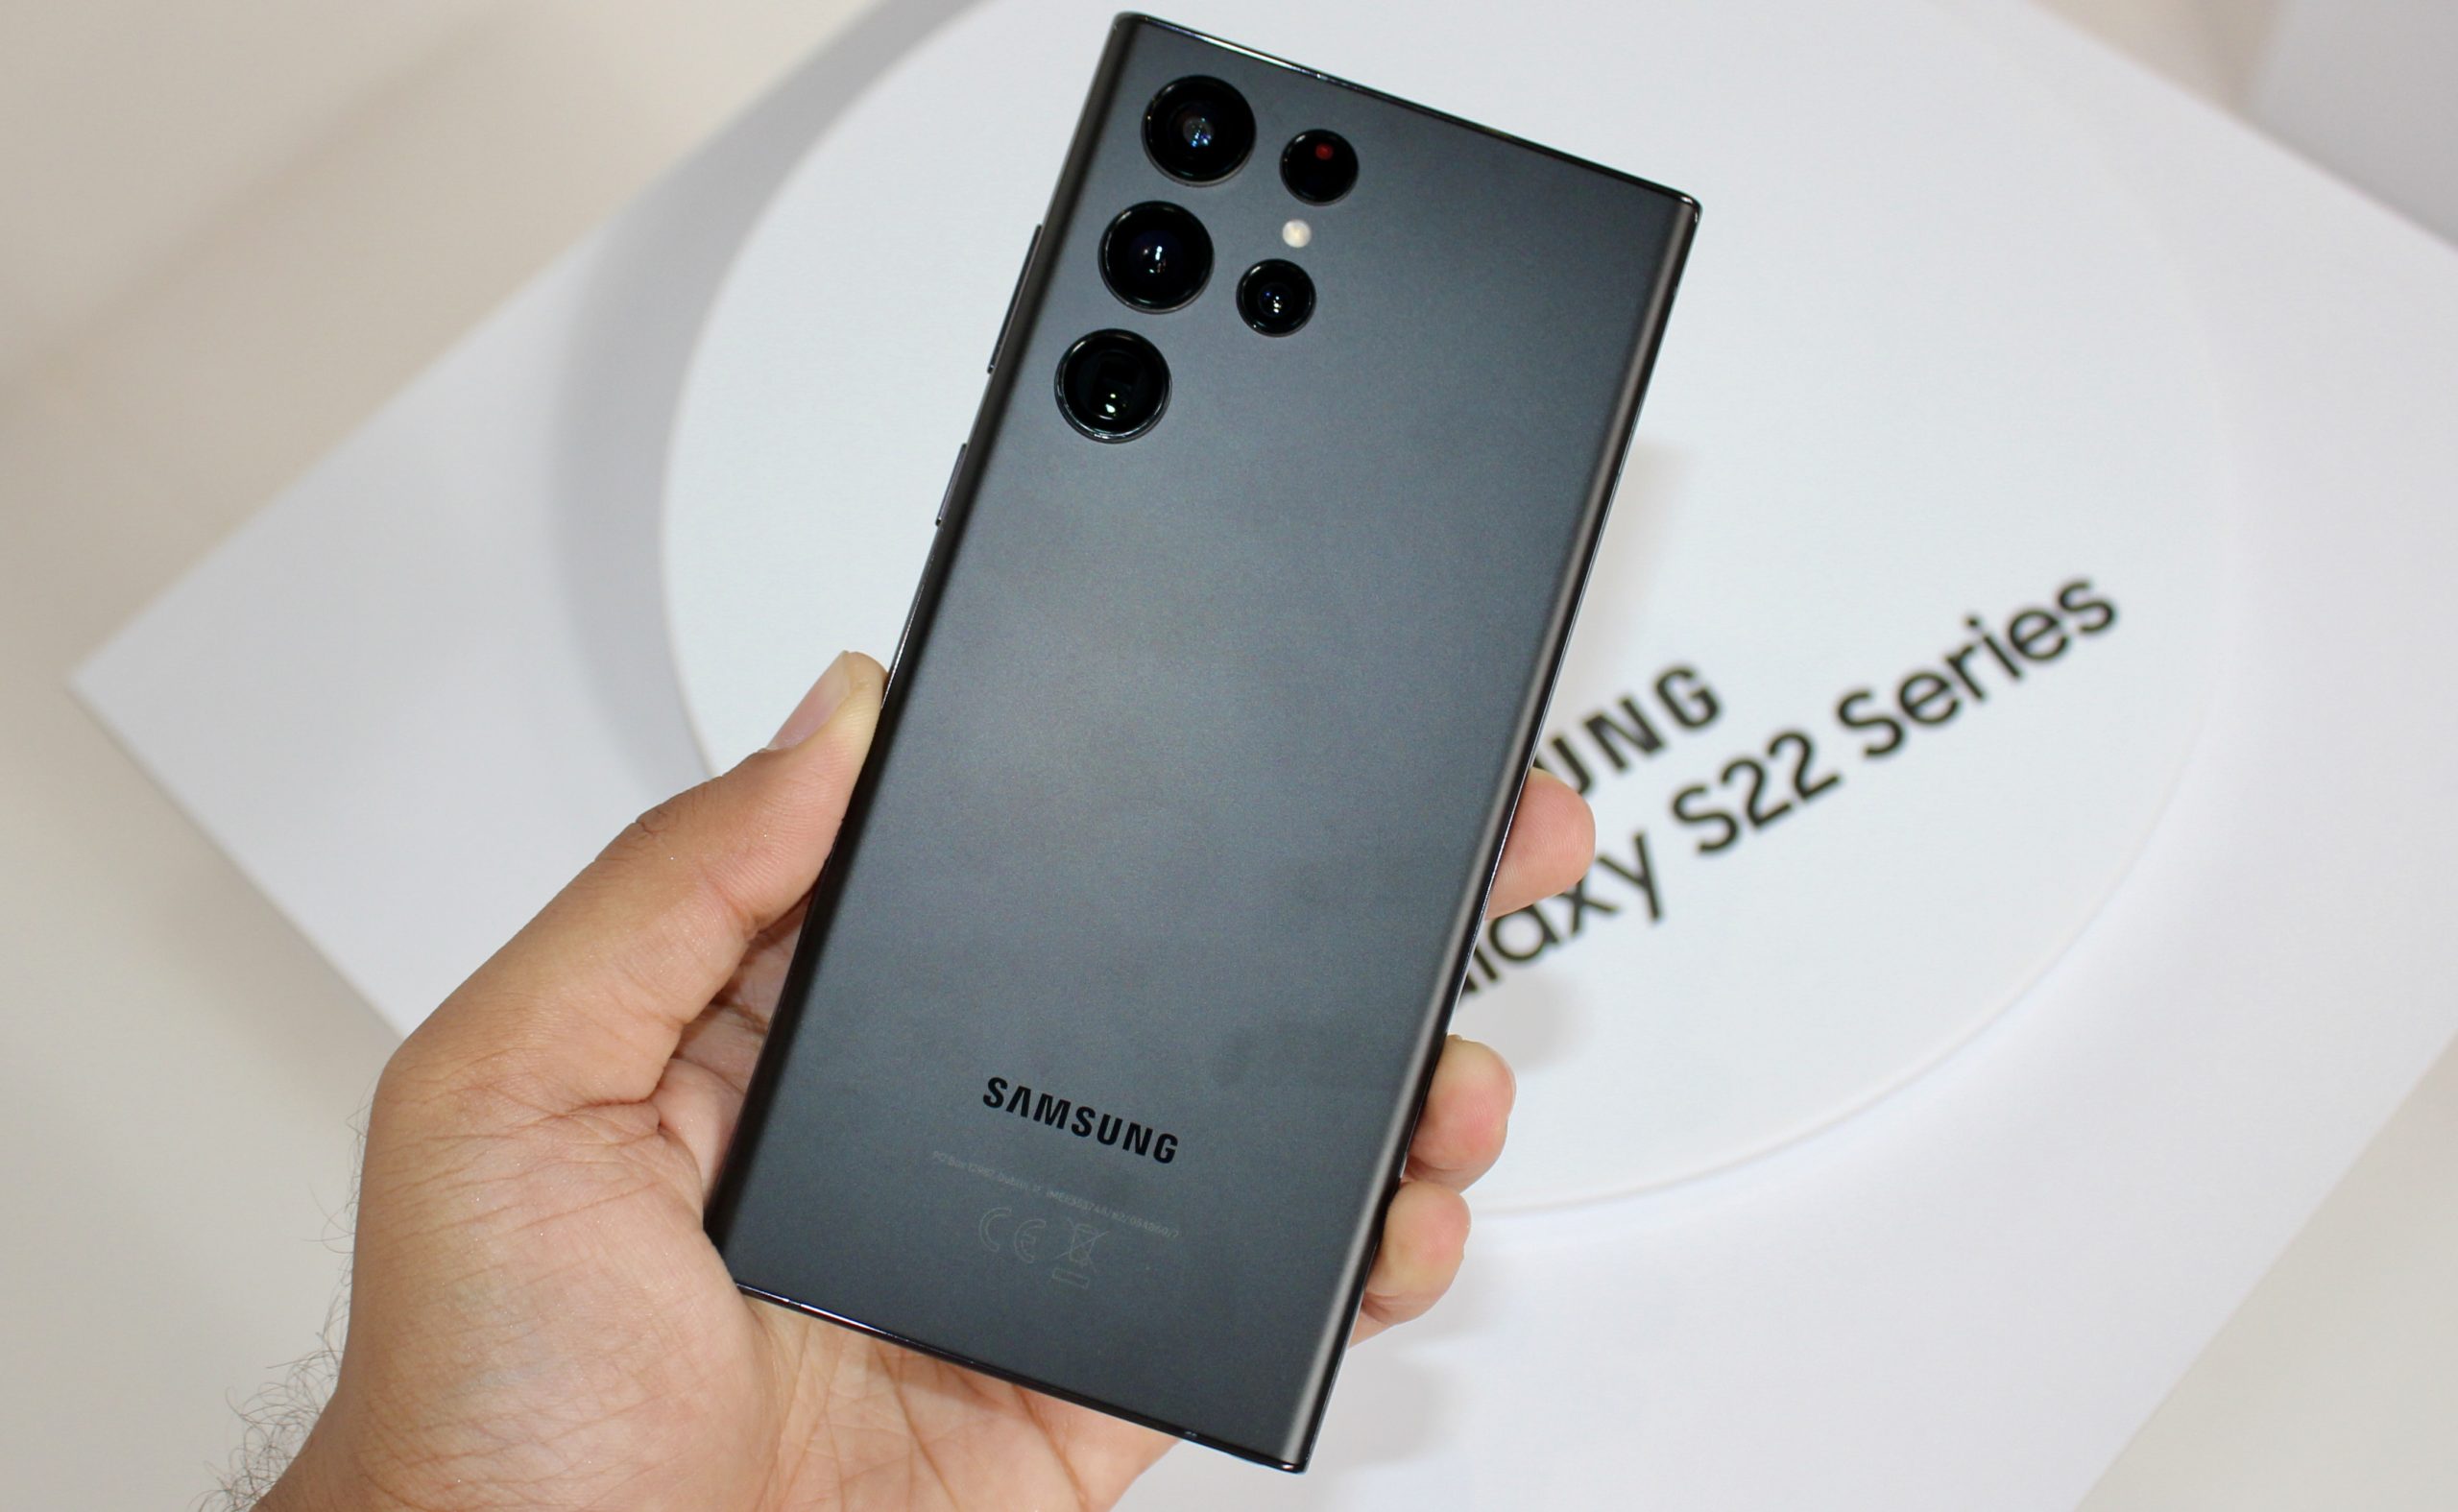 Samsung Galaxy S22 Series kini dibuka untuk pra-tempahan di Malaysia - tawaran hebat bernilai sehingga RM 1,317 7